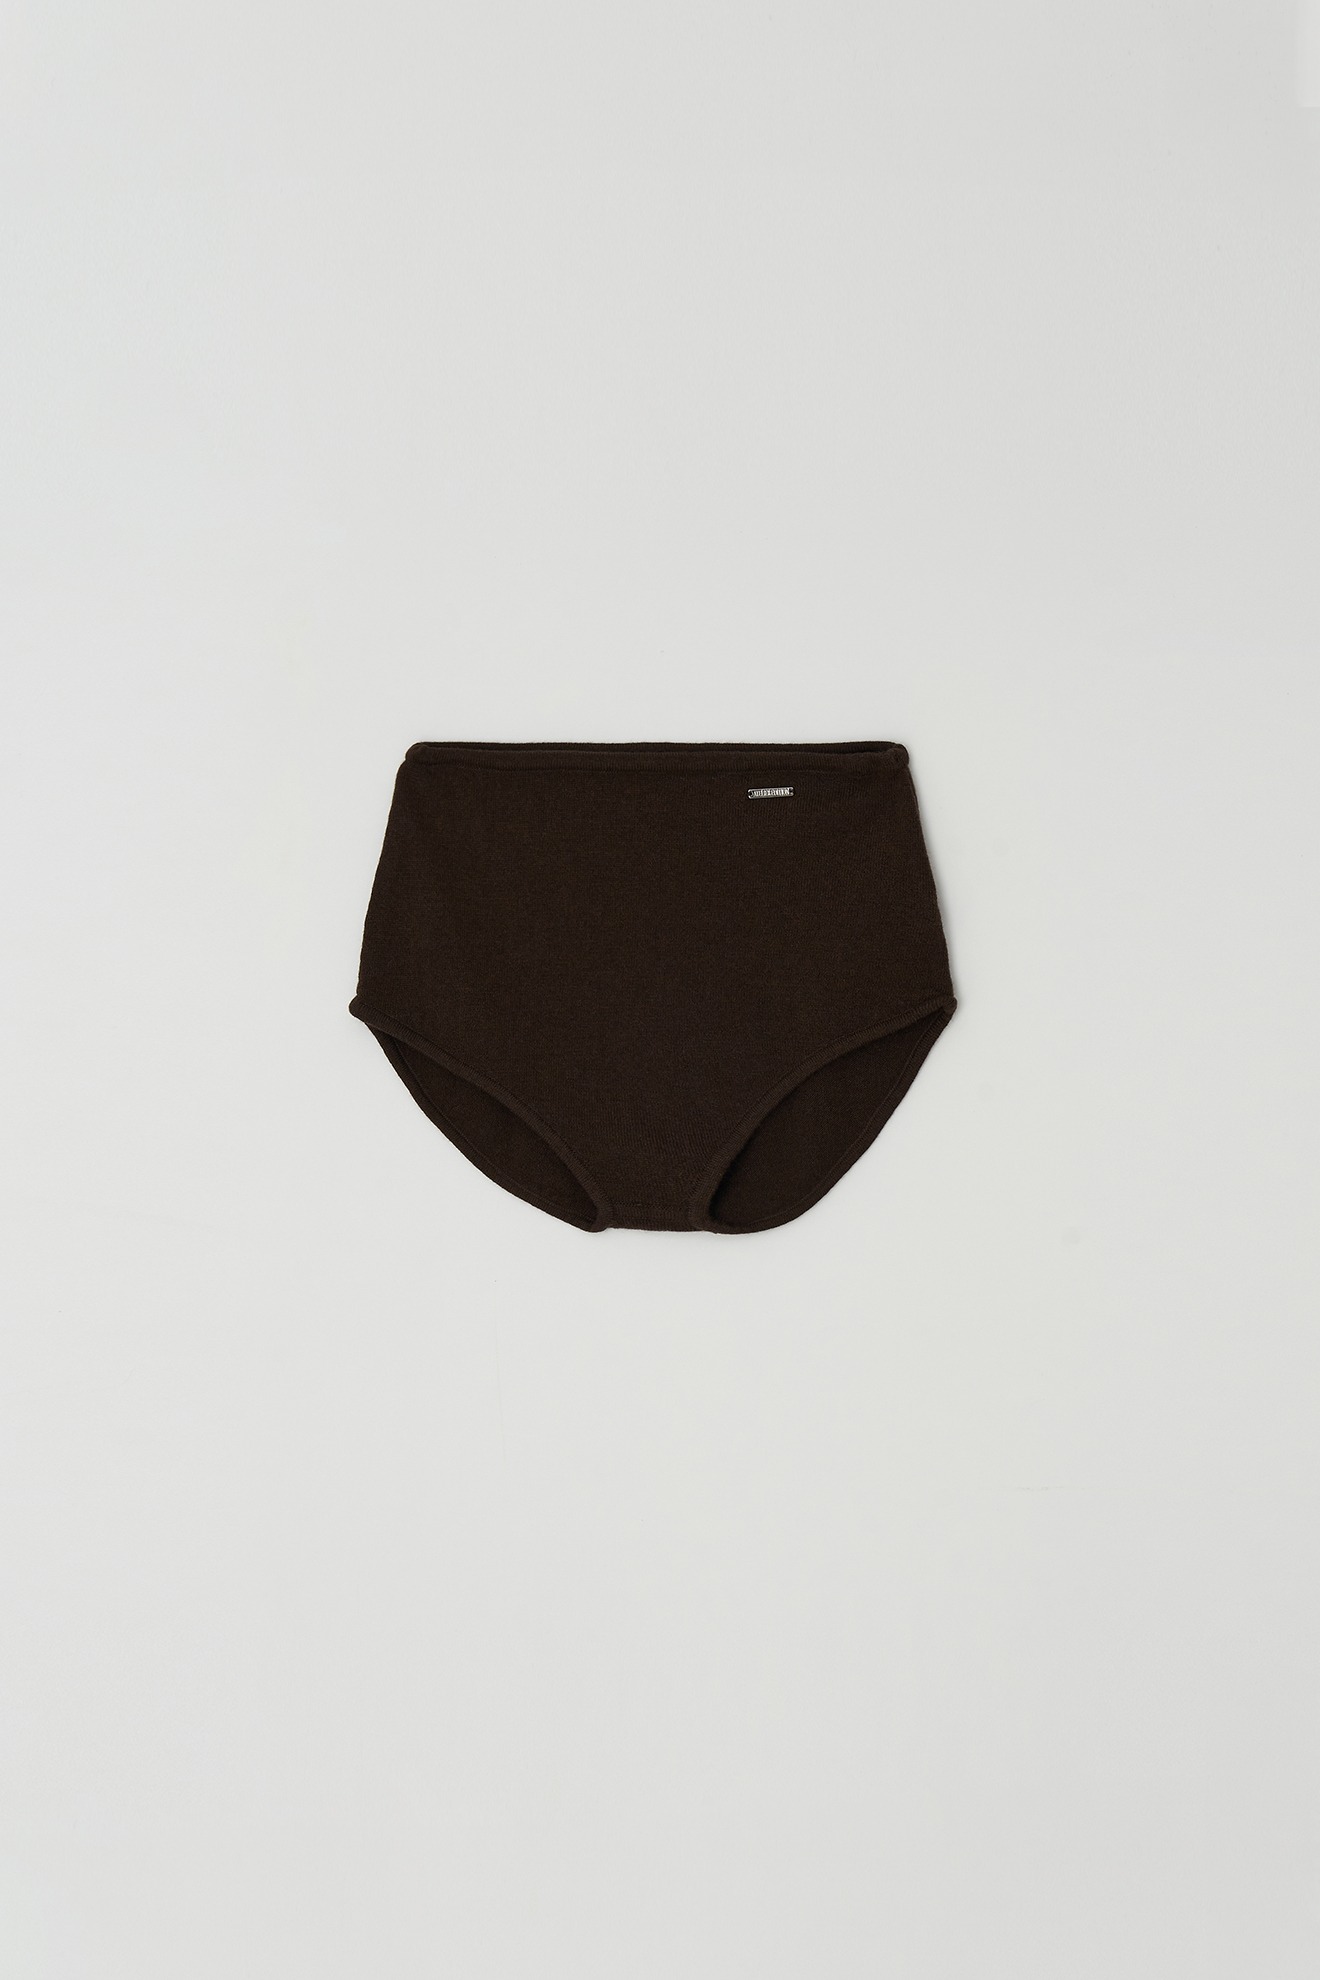 Micro Knit Pants (brown)